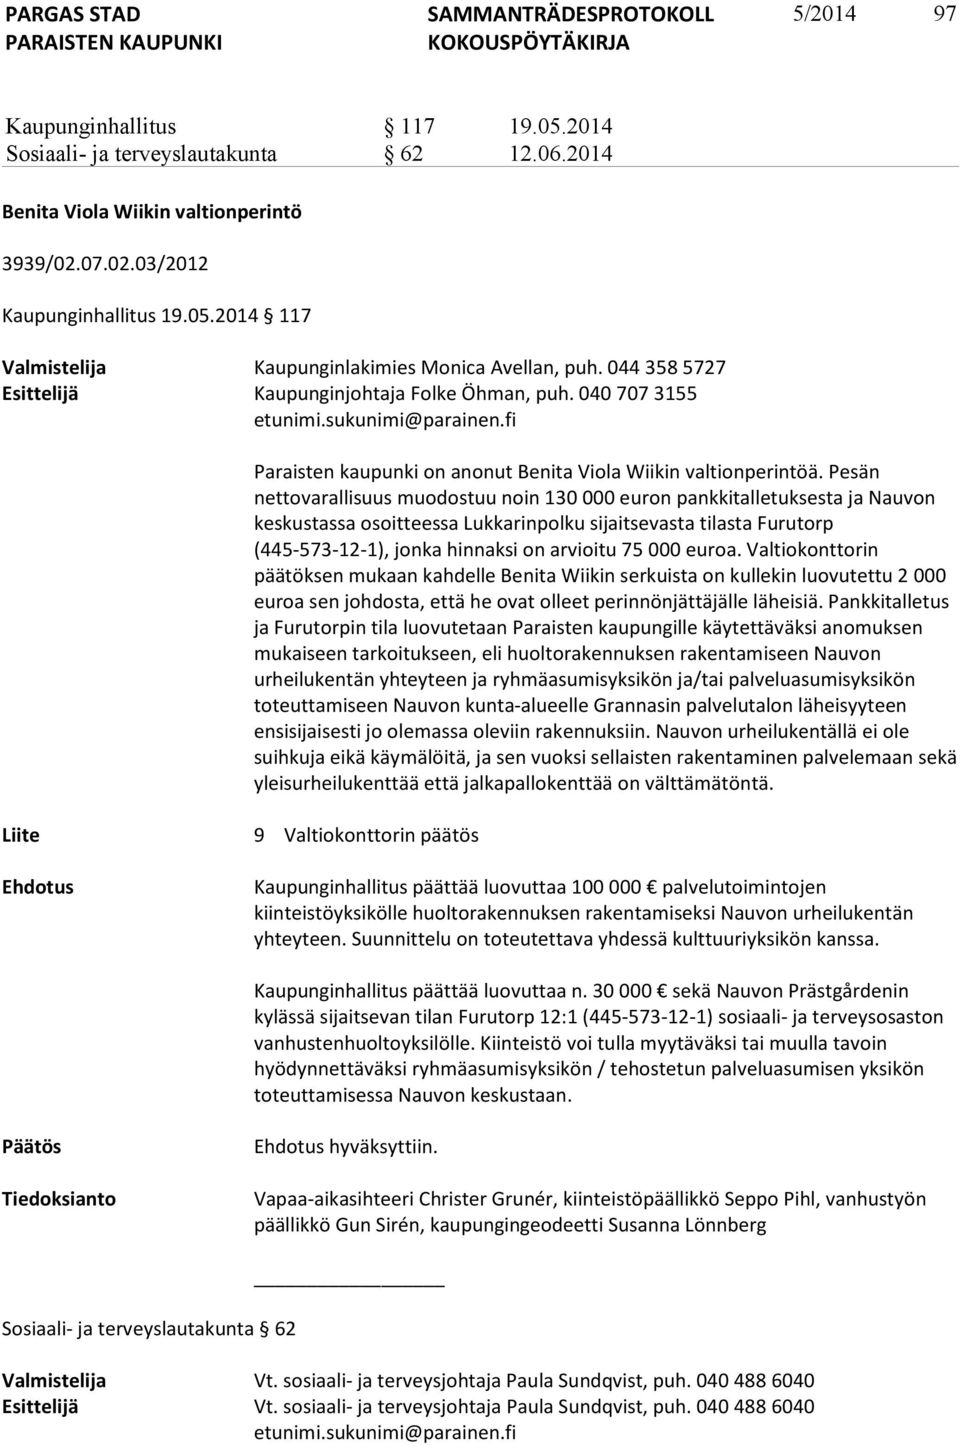 Pesän nettovarallisuus muodostuu noin 130 000 euron pankkitalletuksesta ja Nauvon keskustassa osoitteessa Lukkarinpolku sijaitsevasta tilasta Furutorp (445-573-12-1), jonka hinnaksi on arvioitu 75